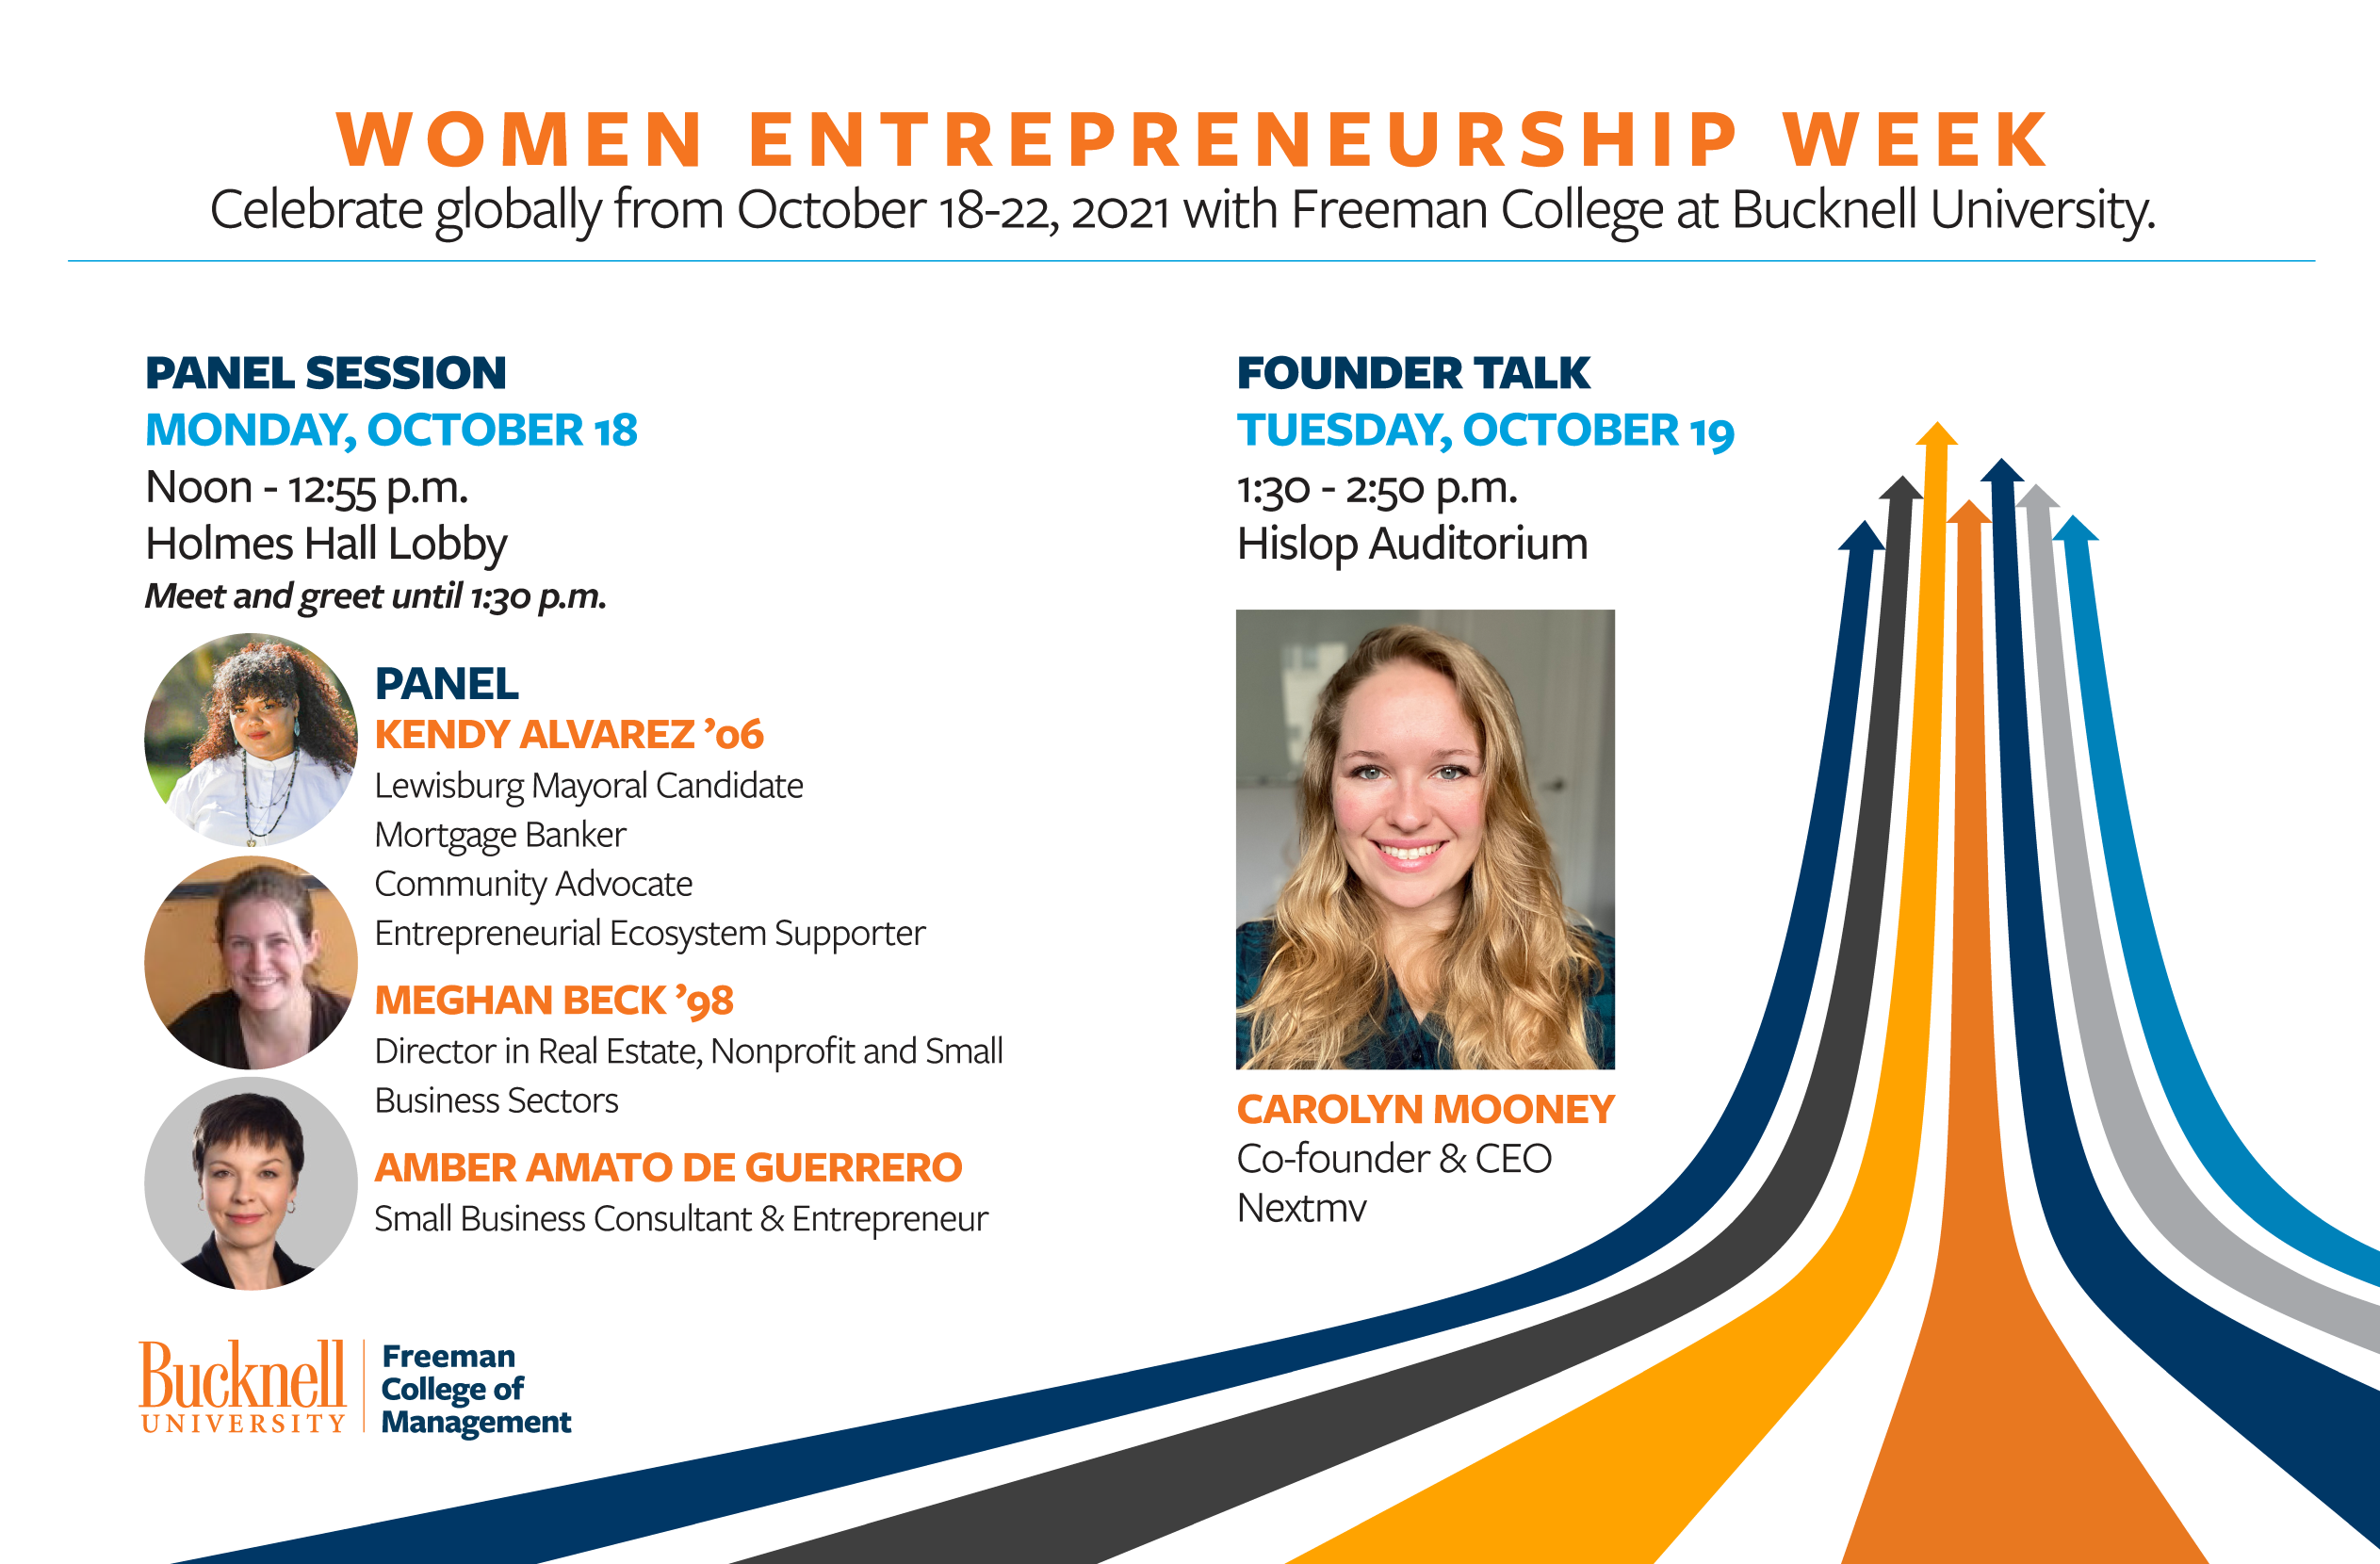 Celebrate global Women’s Entrepreneurship Week with Entrepreneurship Panel on October 18th